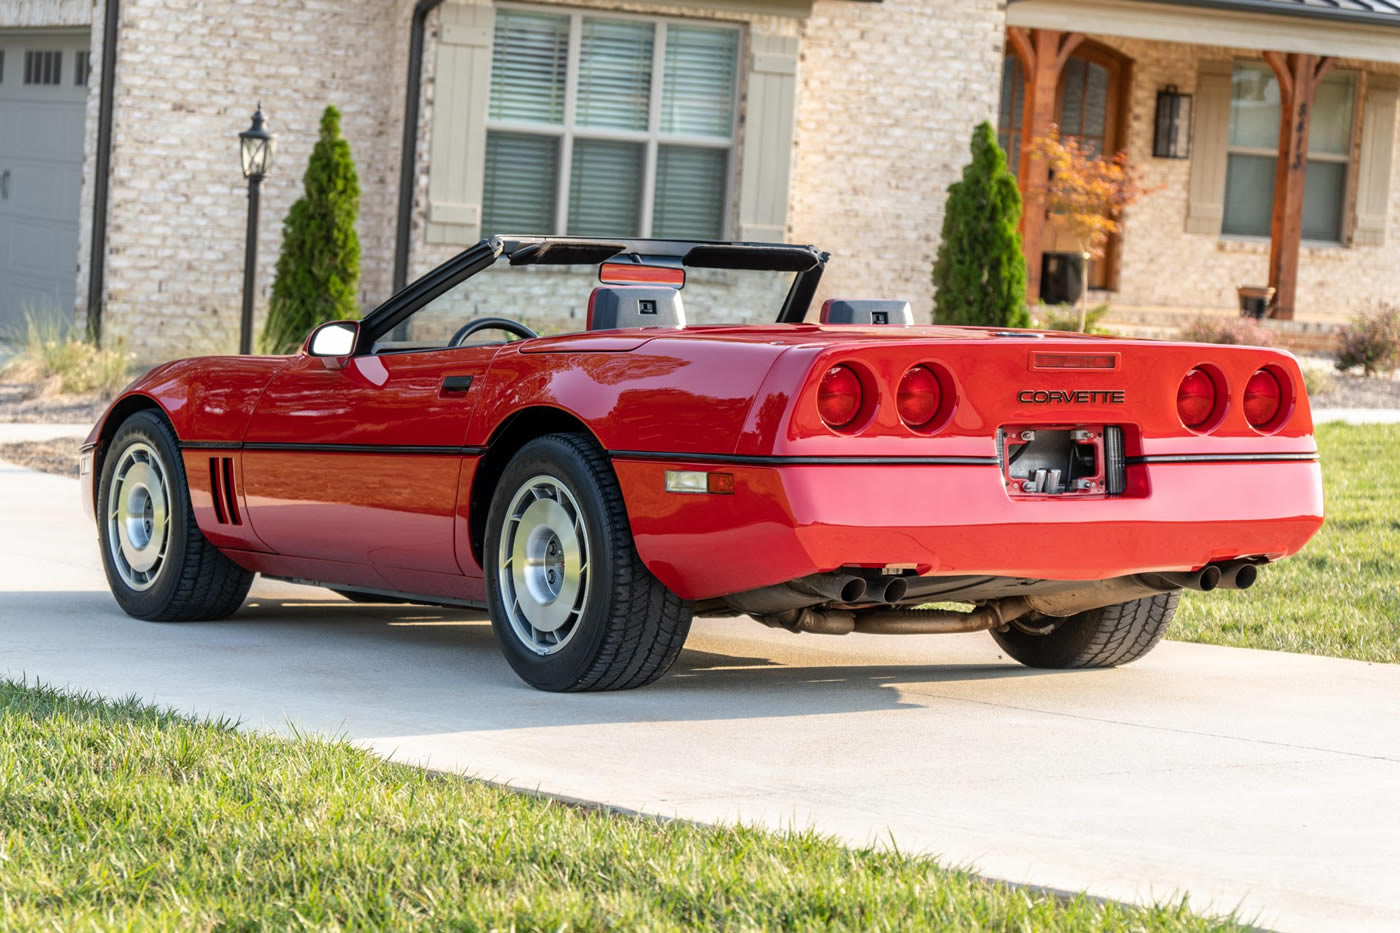 1987 Corvette Convertible in Bright Red